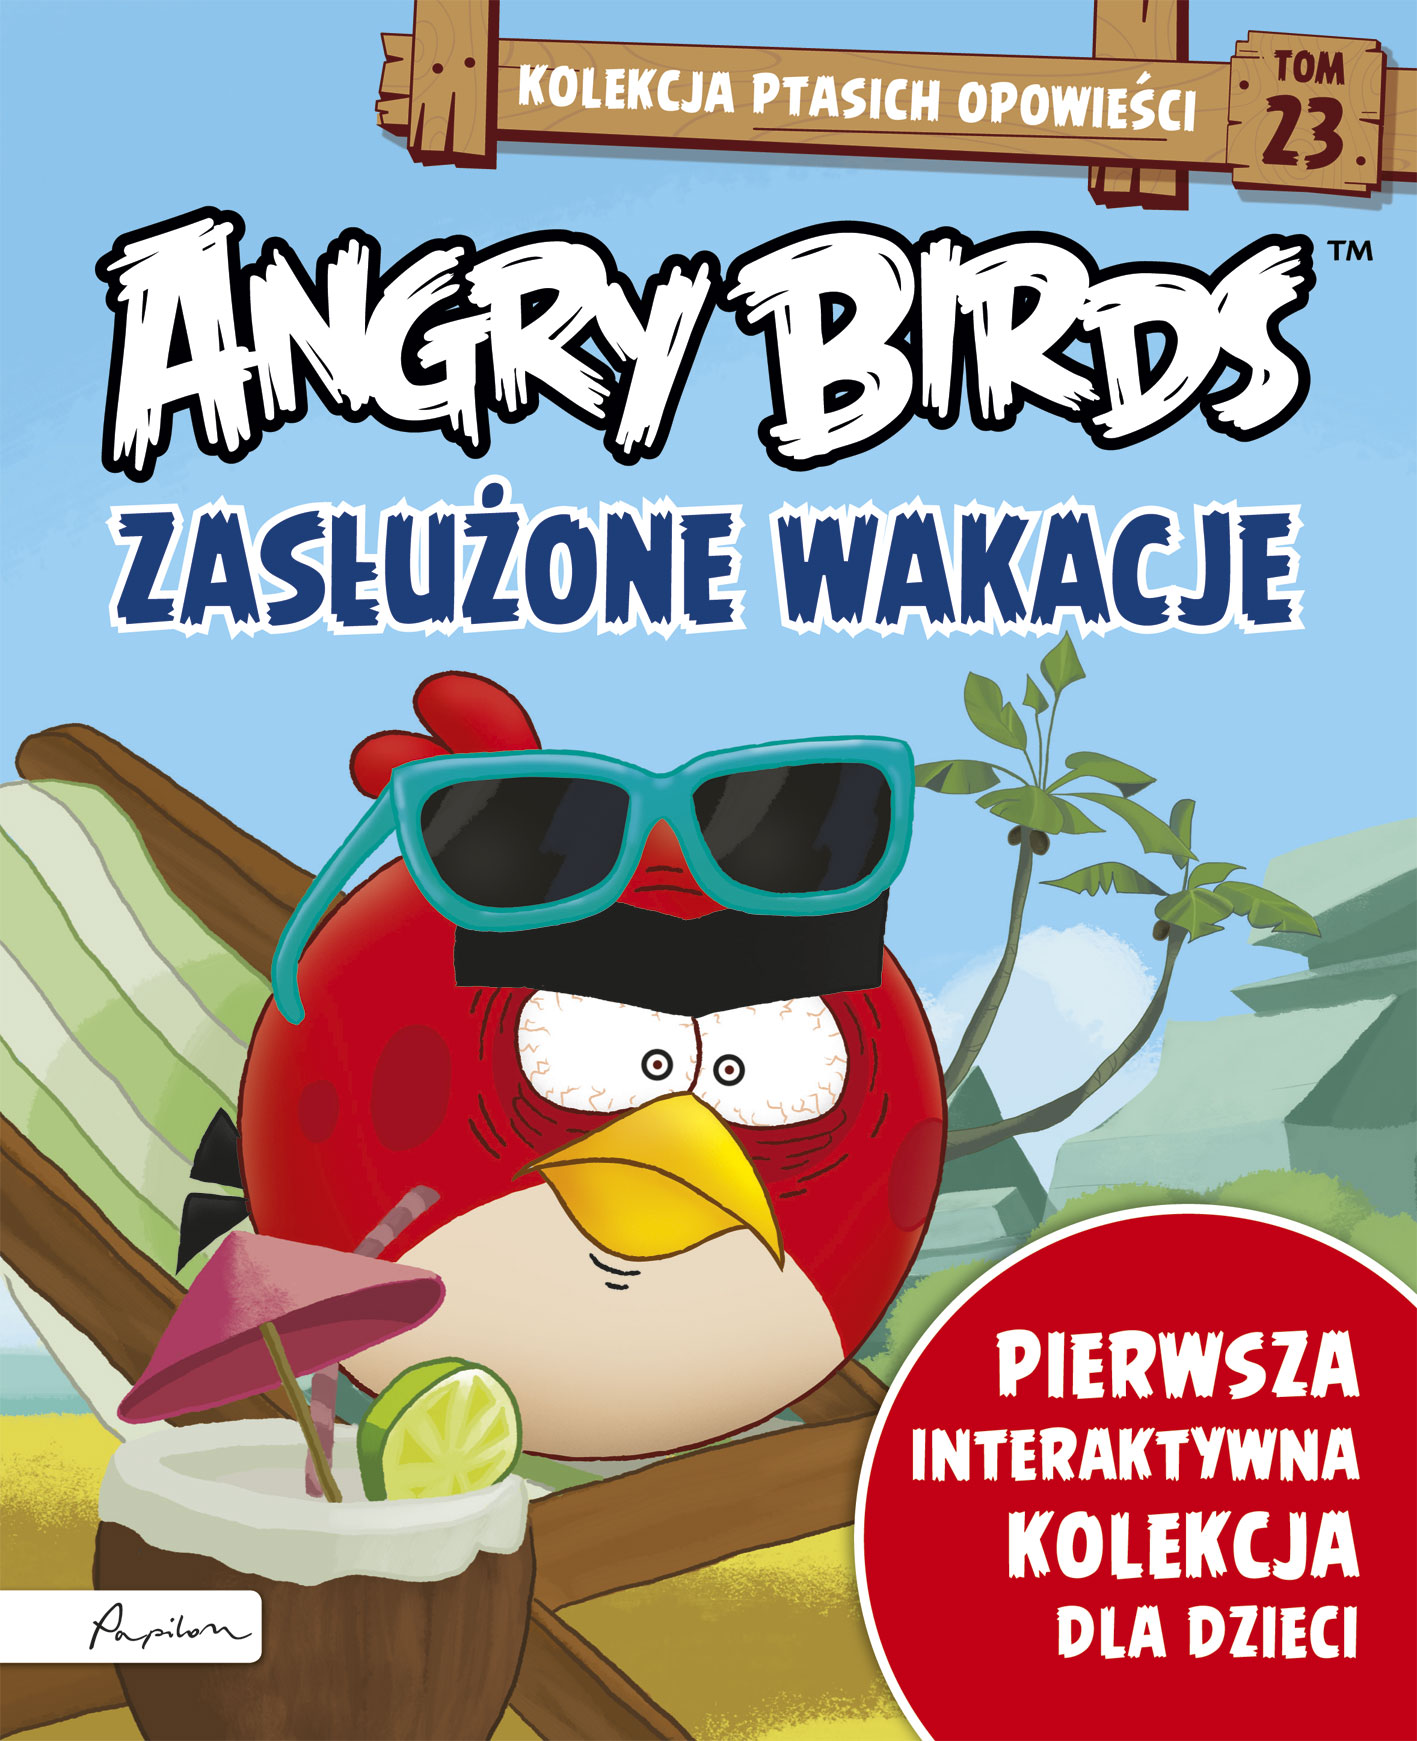 Angry Birds. Kolekcja ptasich opowieści 23. Zasłużone wakacje.